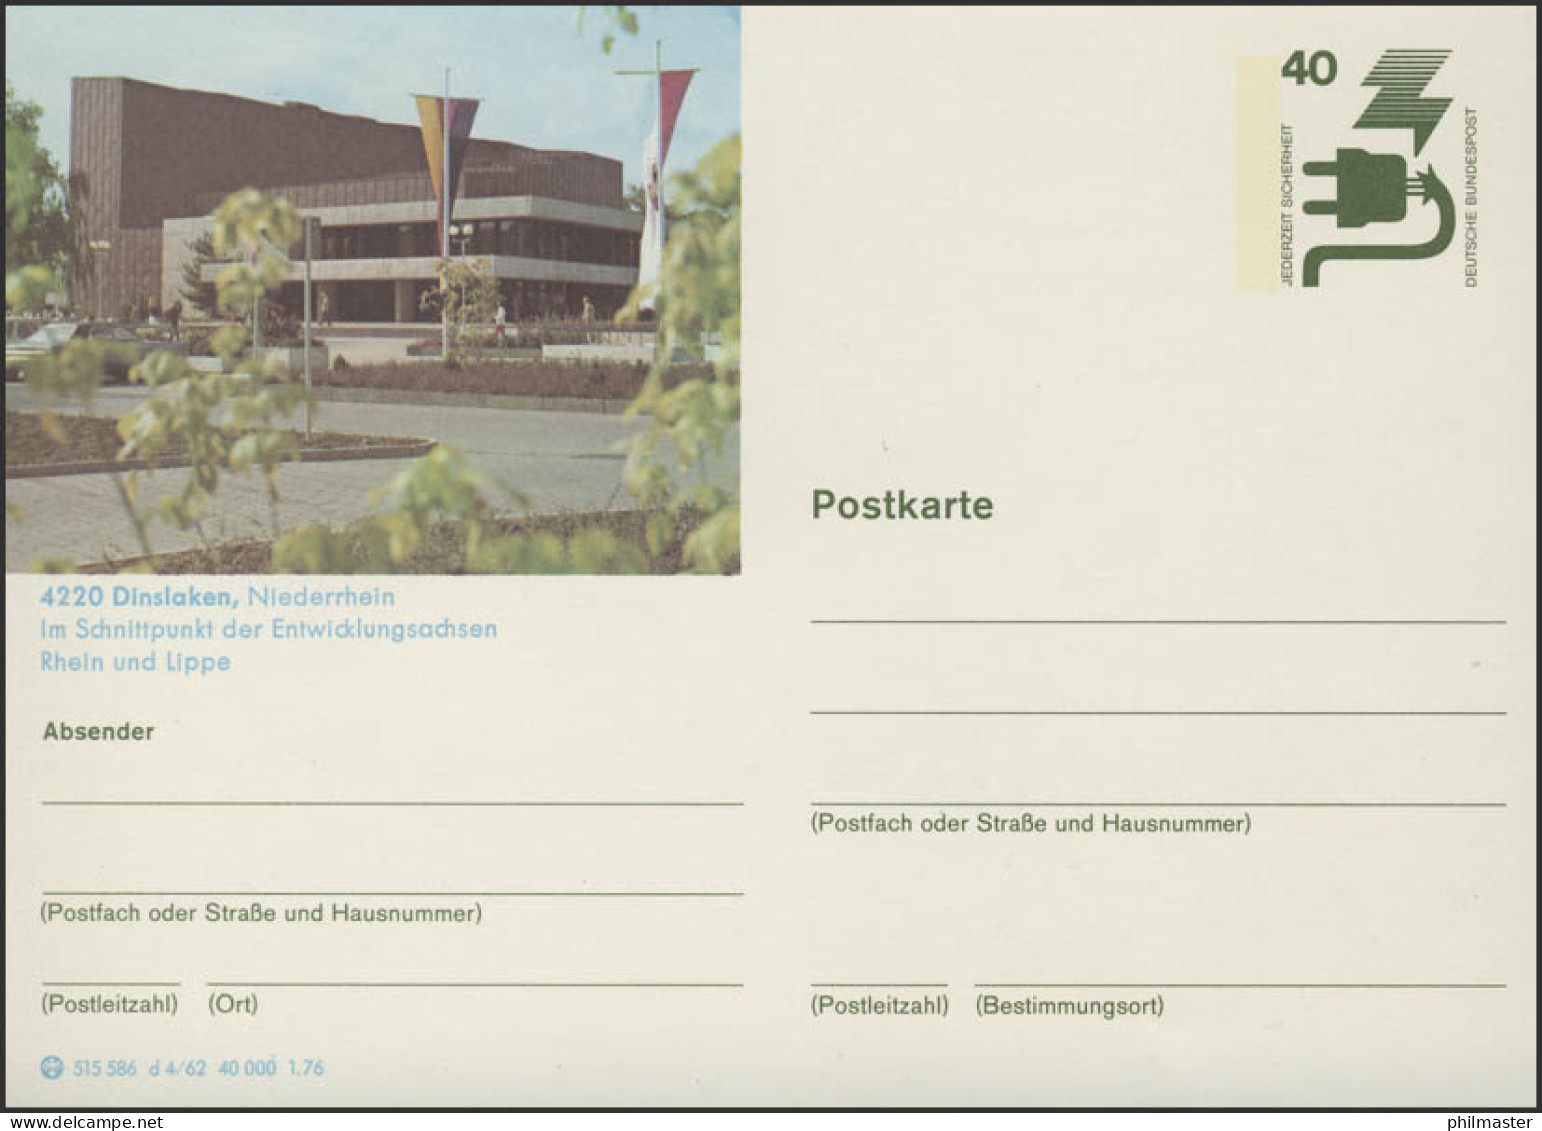 P120-d4/062 4220 Dinslaken/Niederrhein, ** - Illustrated Postcards - Mint